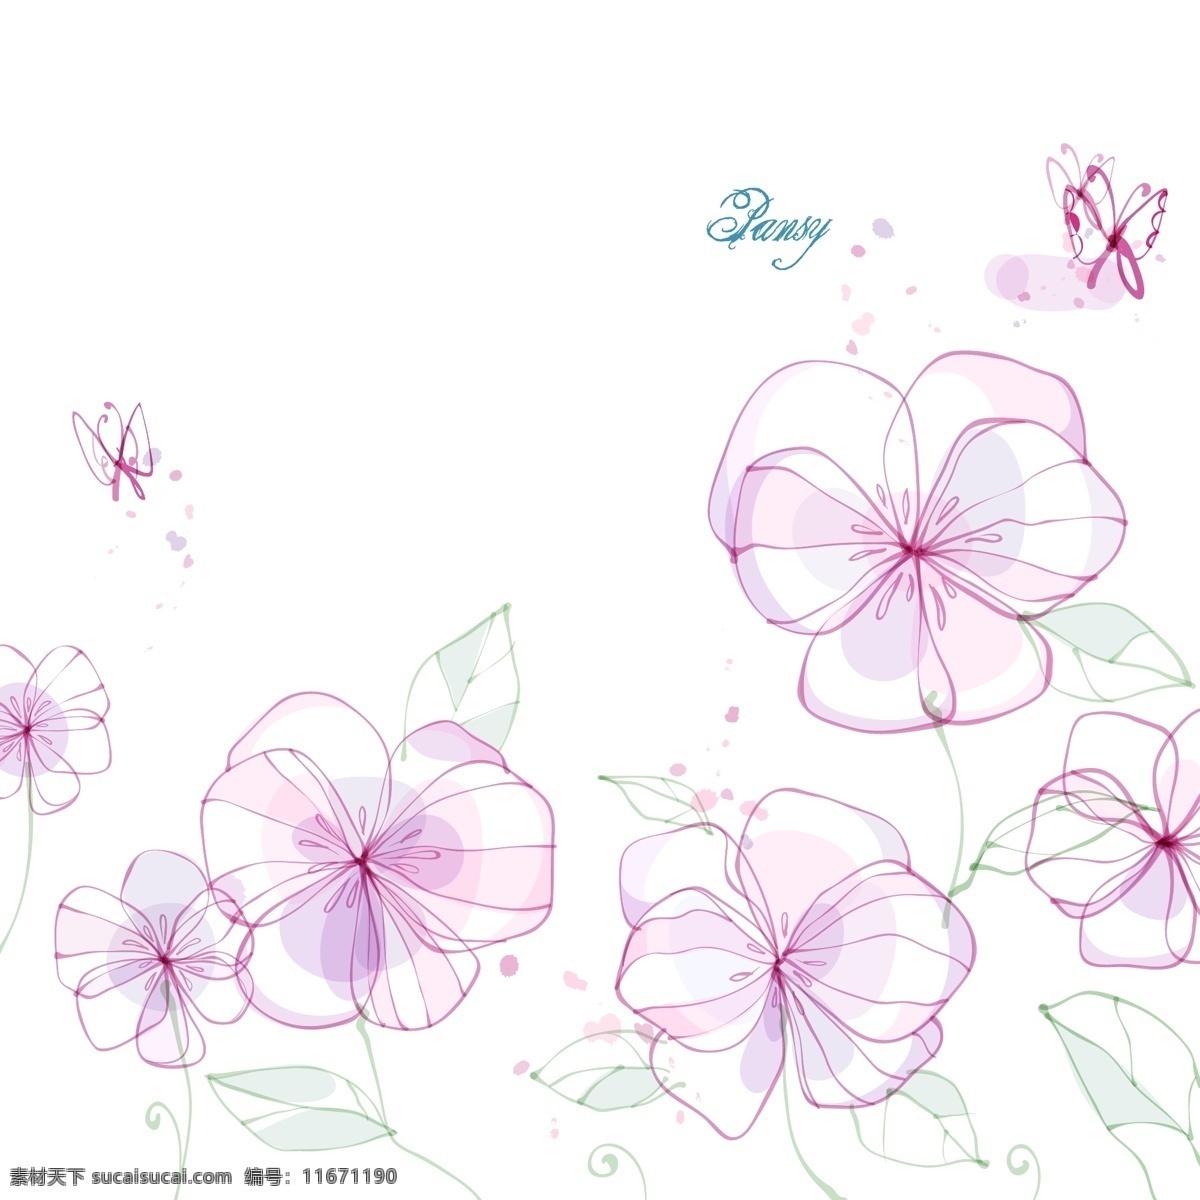 向日葵 矢量图 花朵 花卉 蒲公英 手绘 素描 唯美 紫丁香 tua 三色堇 花纹花边